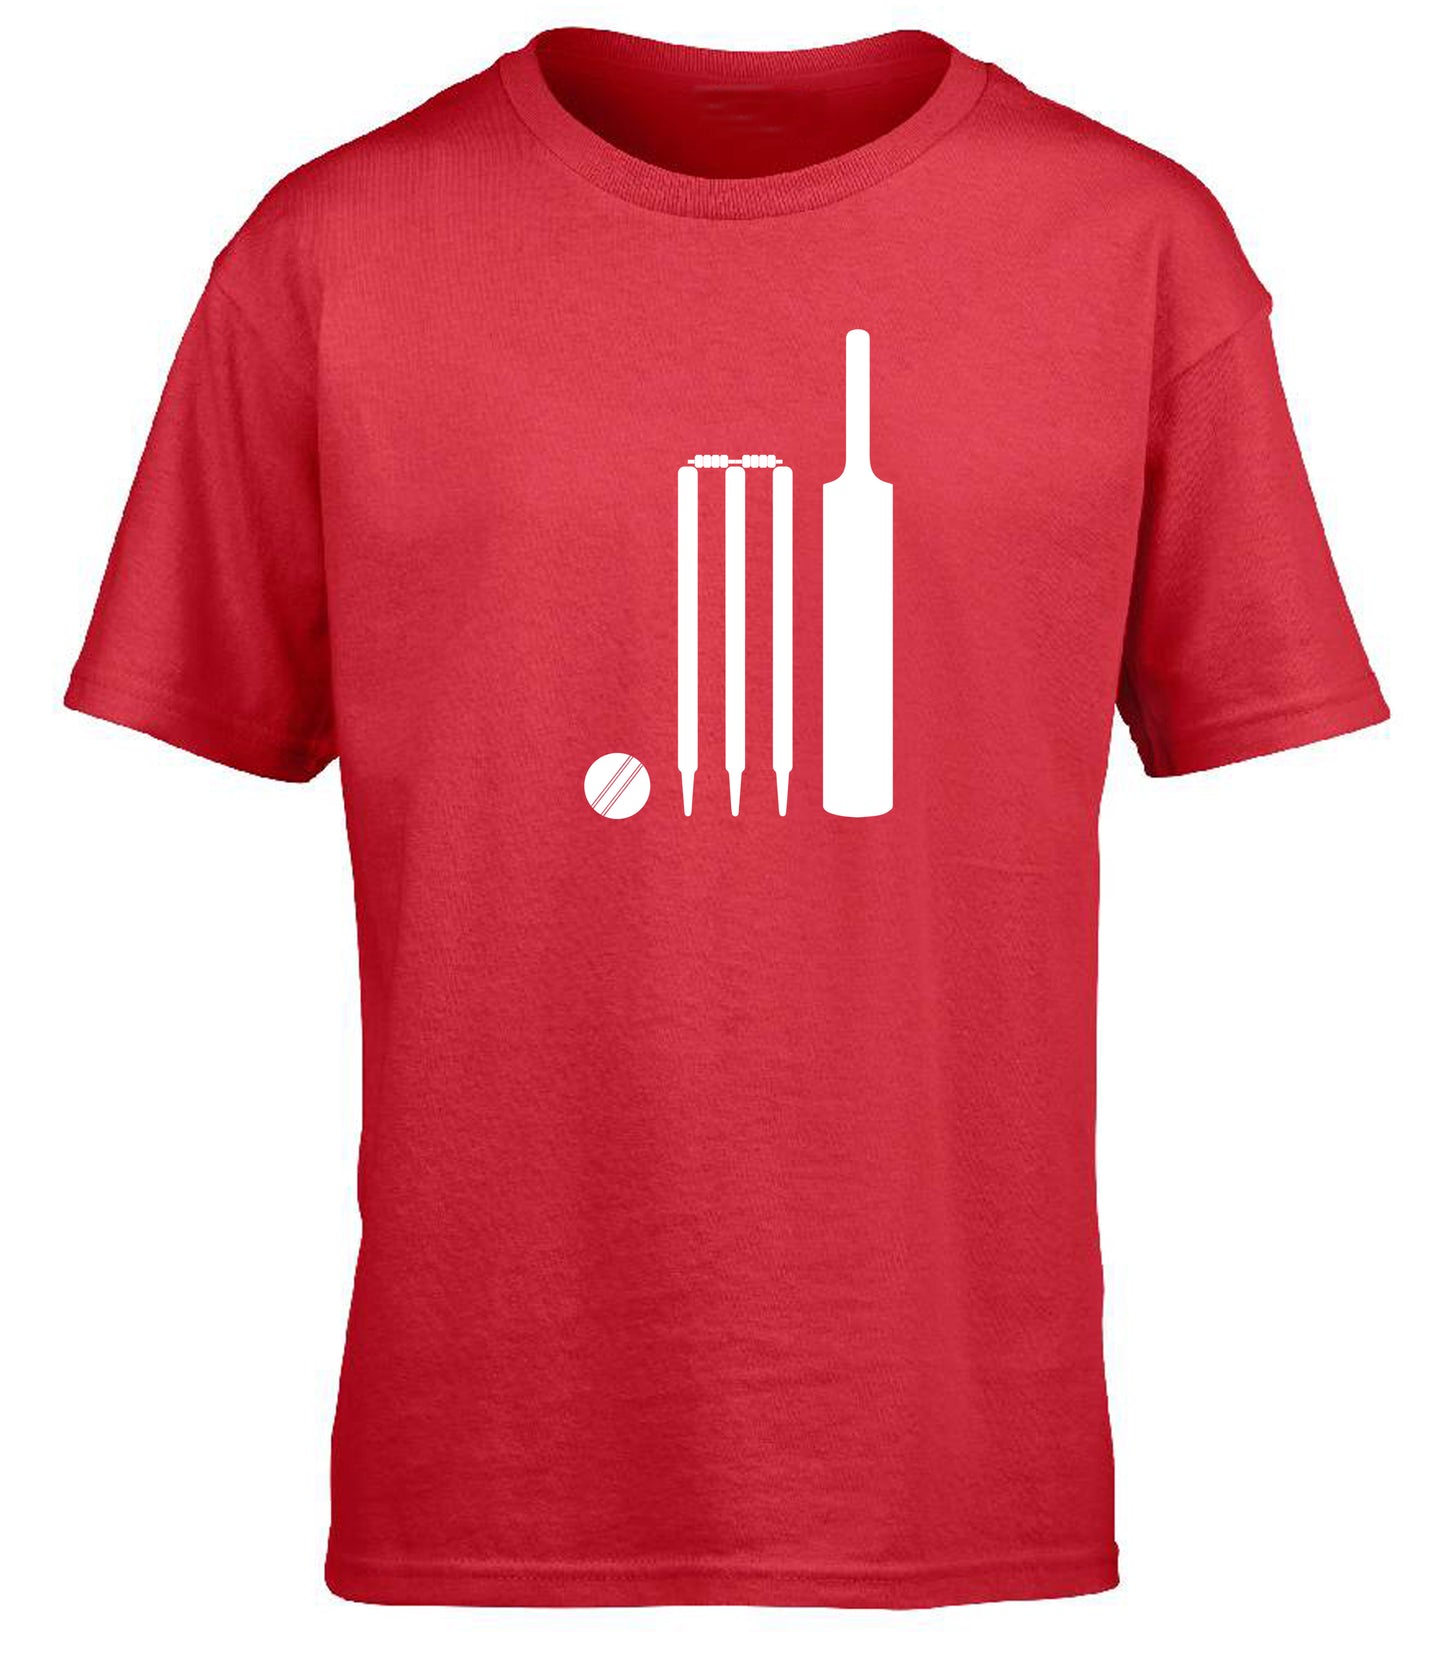 Cricket Bat, Ball and Stumps children's T-shirt